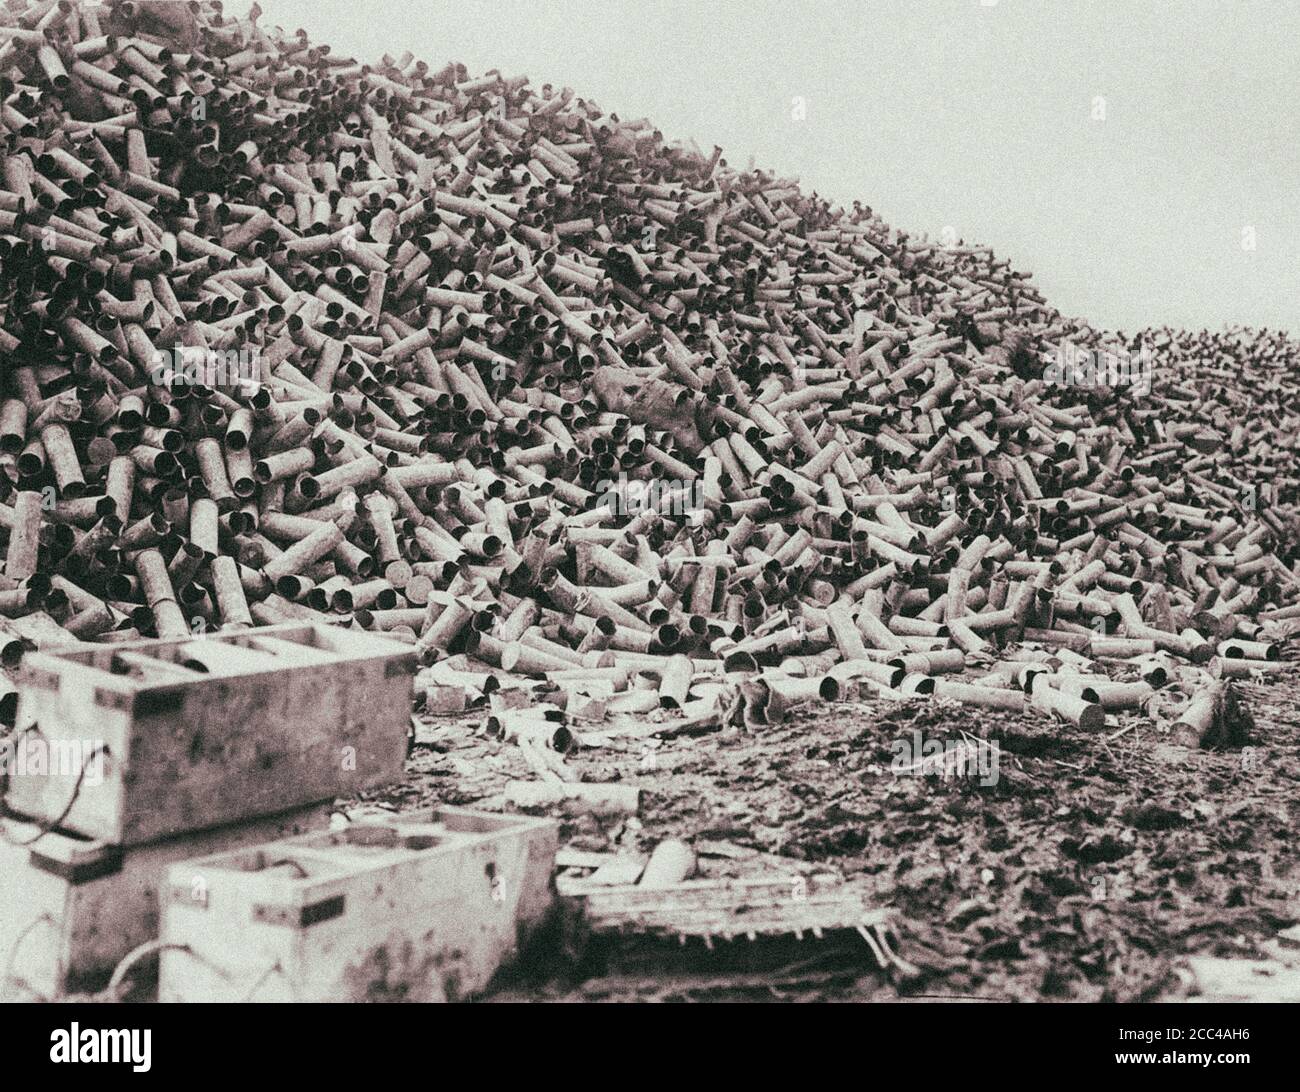 La prima guerra di Worl Battaglia della Somme. L'enorme mucchio di involucri dalle conchiglie. Nella settimana che ha portato alla battaglia, oltre 1.5 milioni di conchiglie sono state fuoco Foto Stock